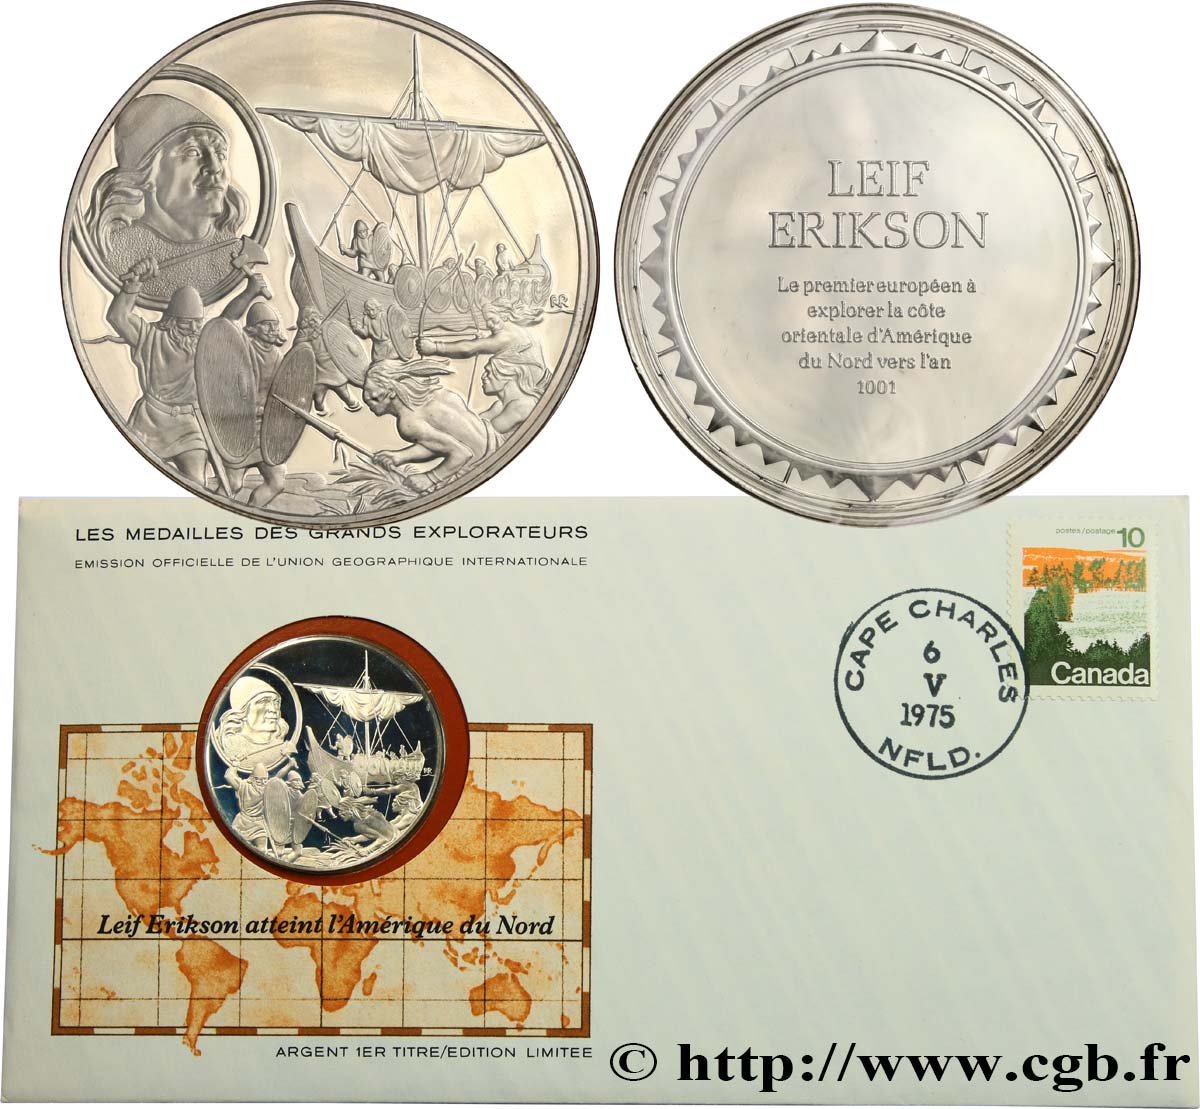 THE GREAT EXPLORERS  MEDALS Enveloppe “Timbre médaille”, Leif Erikson atteint l’Amérique du Nord MS